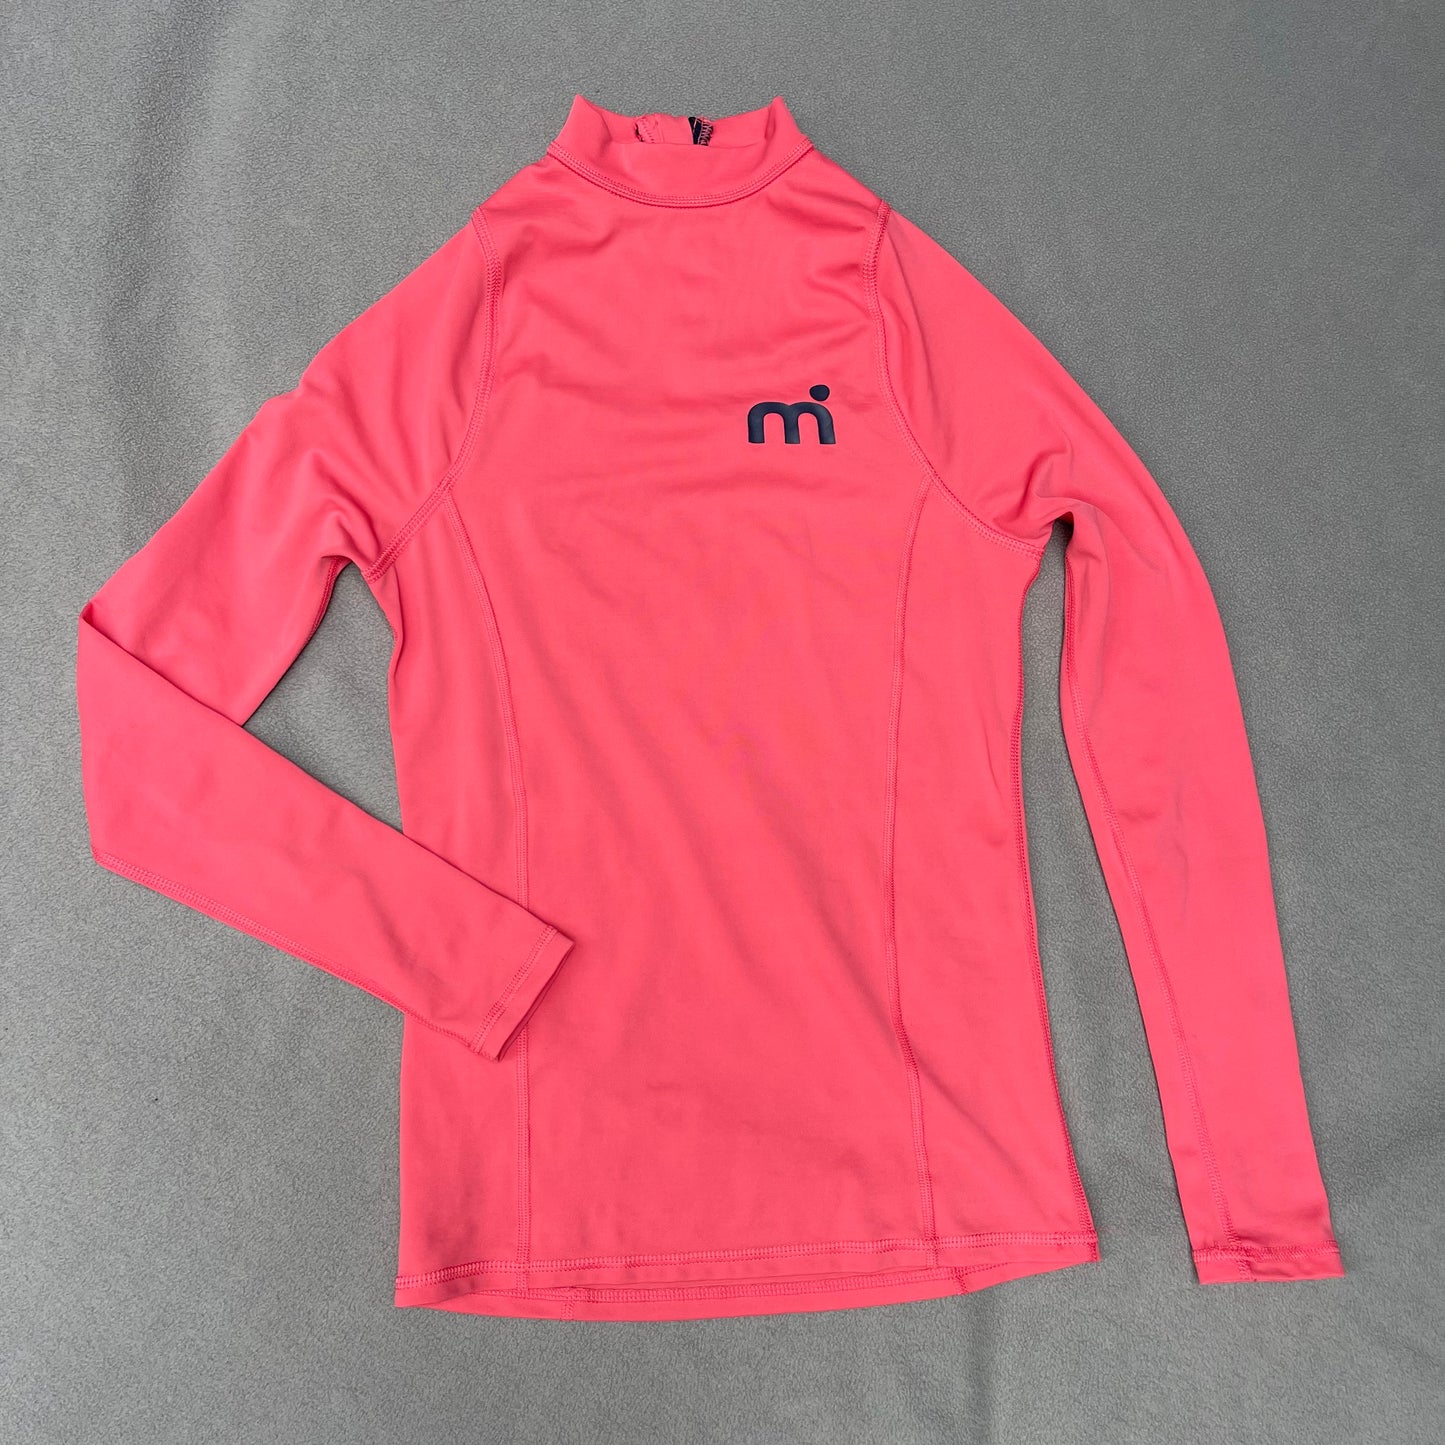 Surf-Shirt XS/S UV-Schutz Badeshirt Damen pink neu